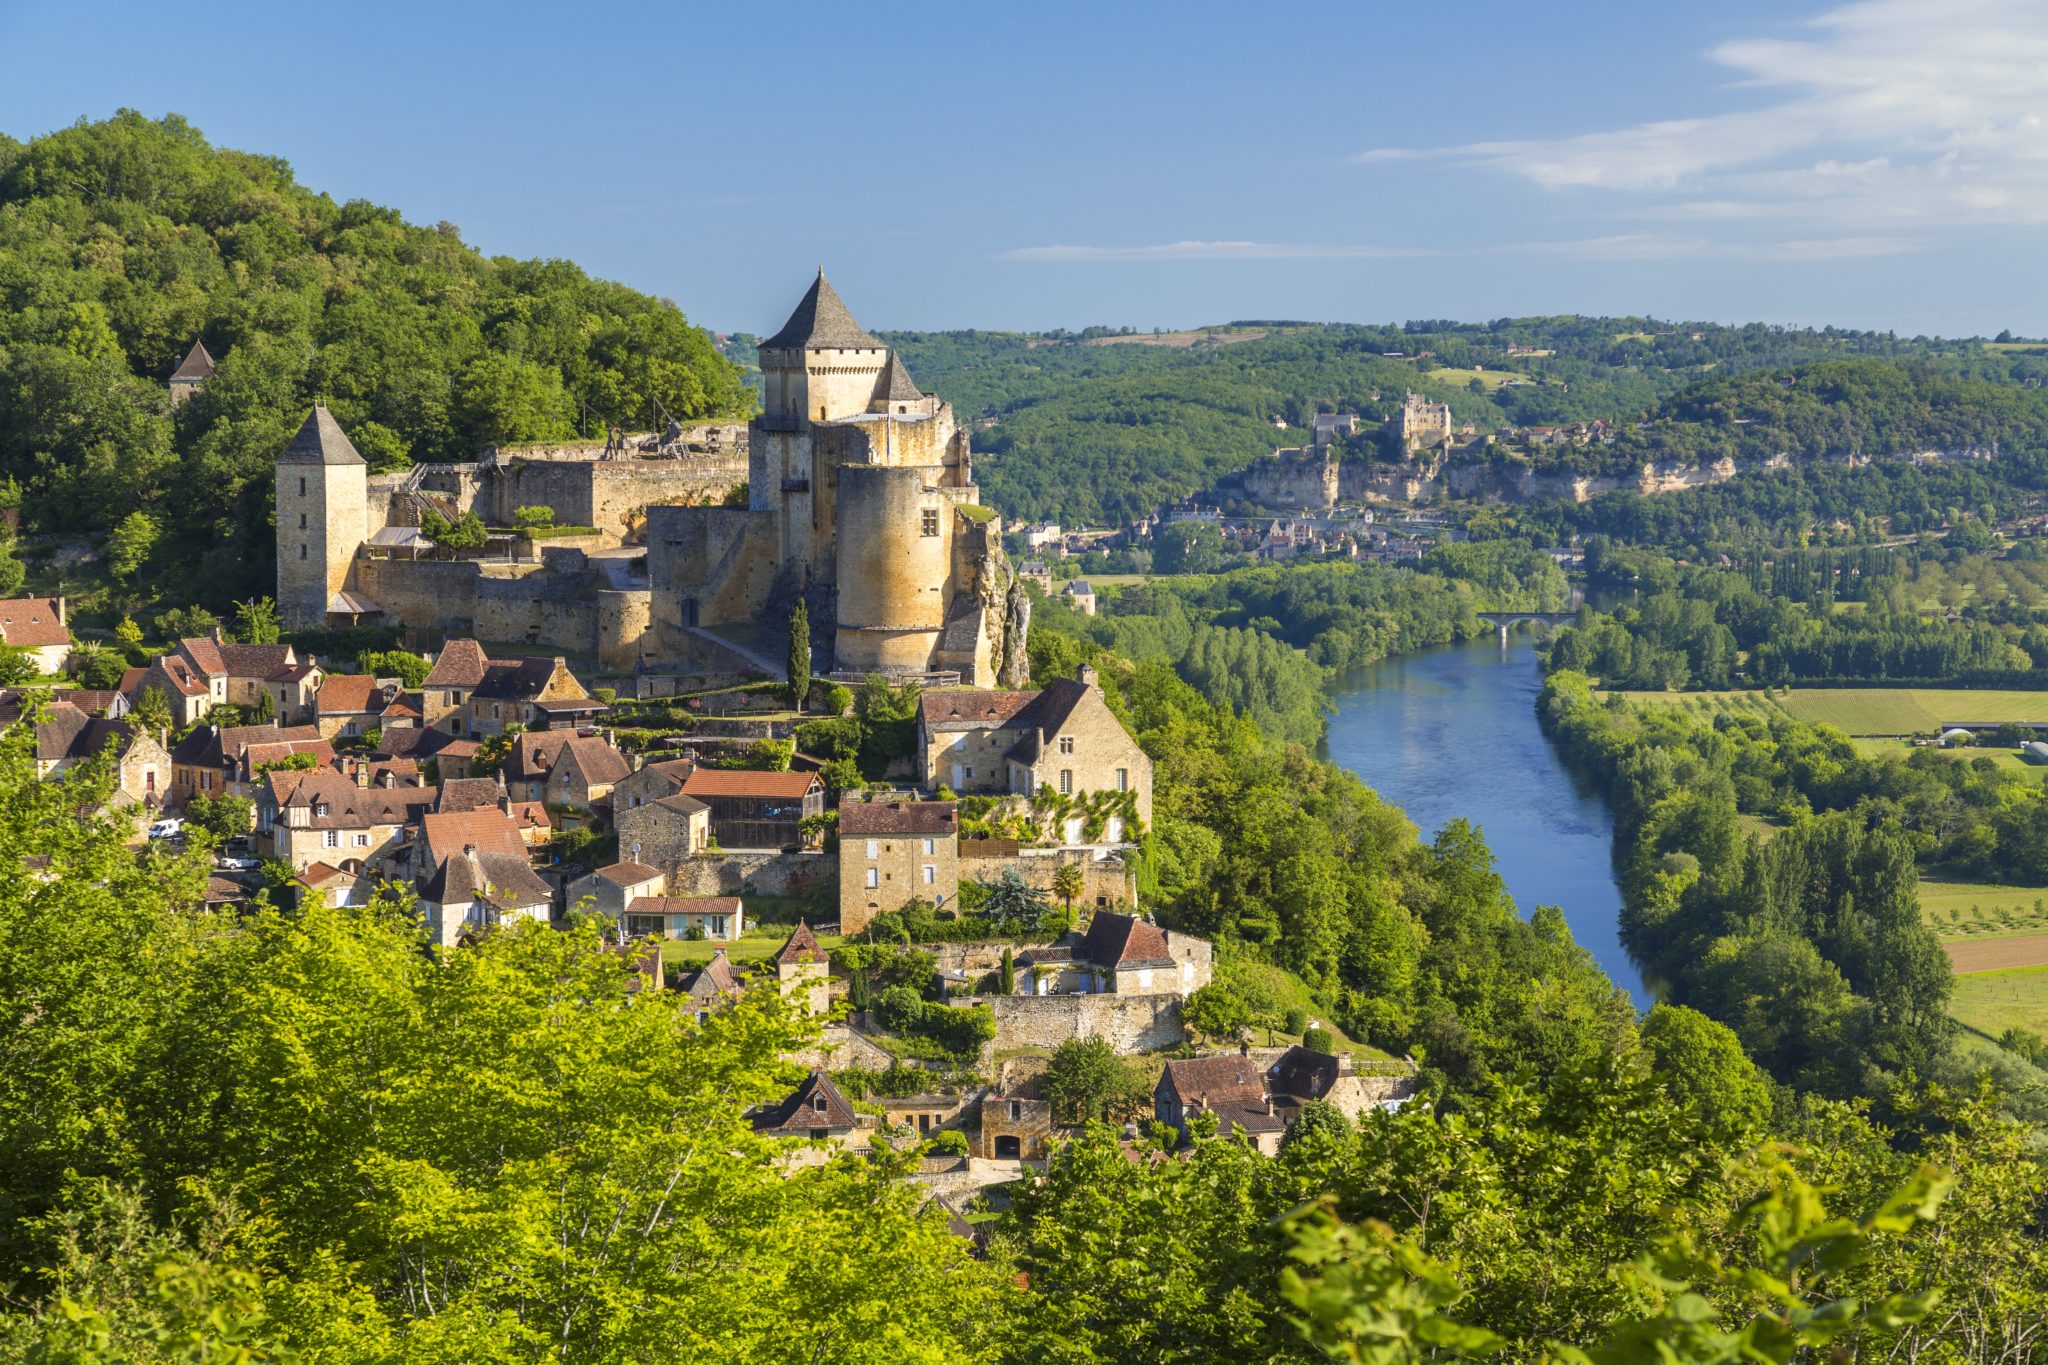 Prachtig kasteel gelegen op een berg boven de Dordogne rivier en omringd door groene bossen en velden.